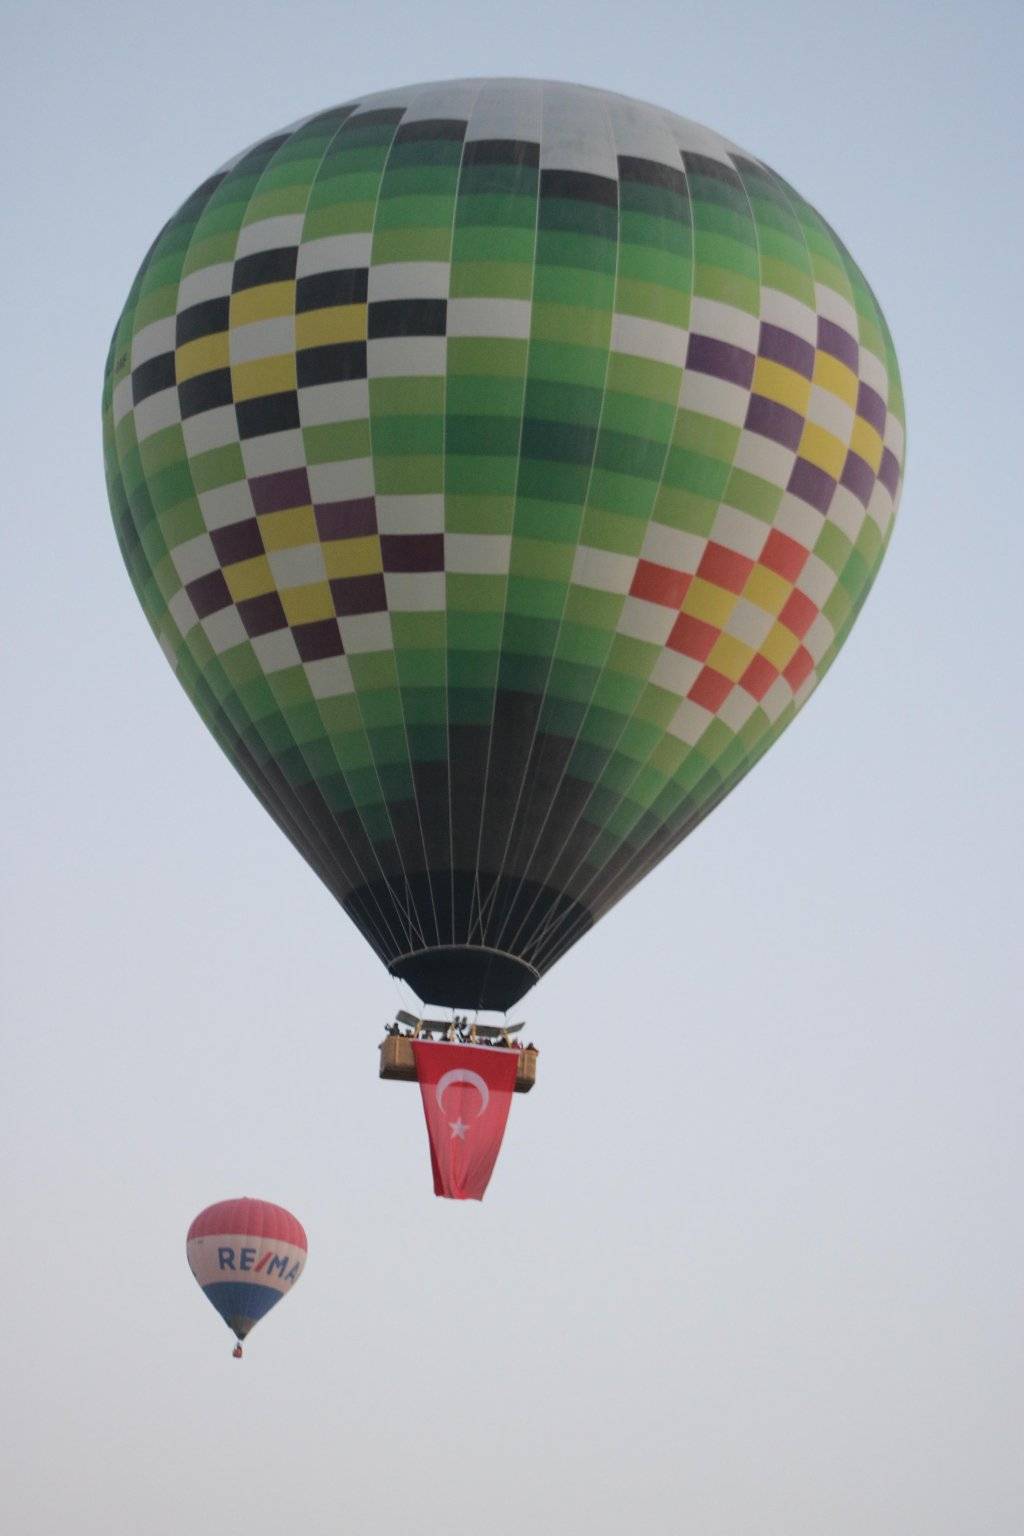 Sıcak hava balonları 10 Kasım'da böyle görüntülendi: Atatürk posterleriyle havalandılar 15